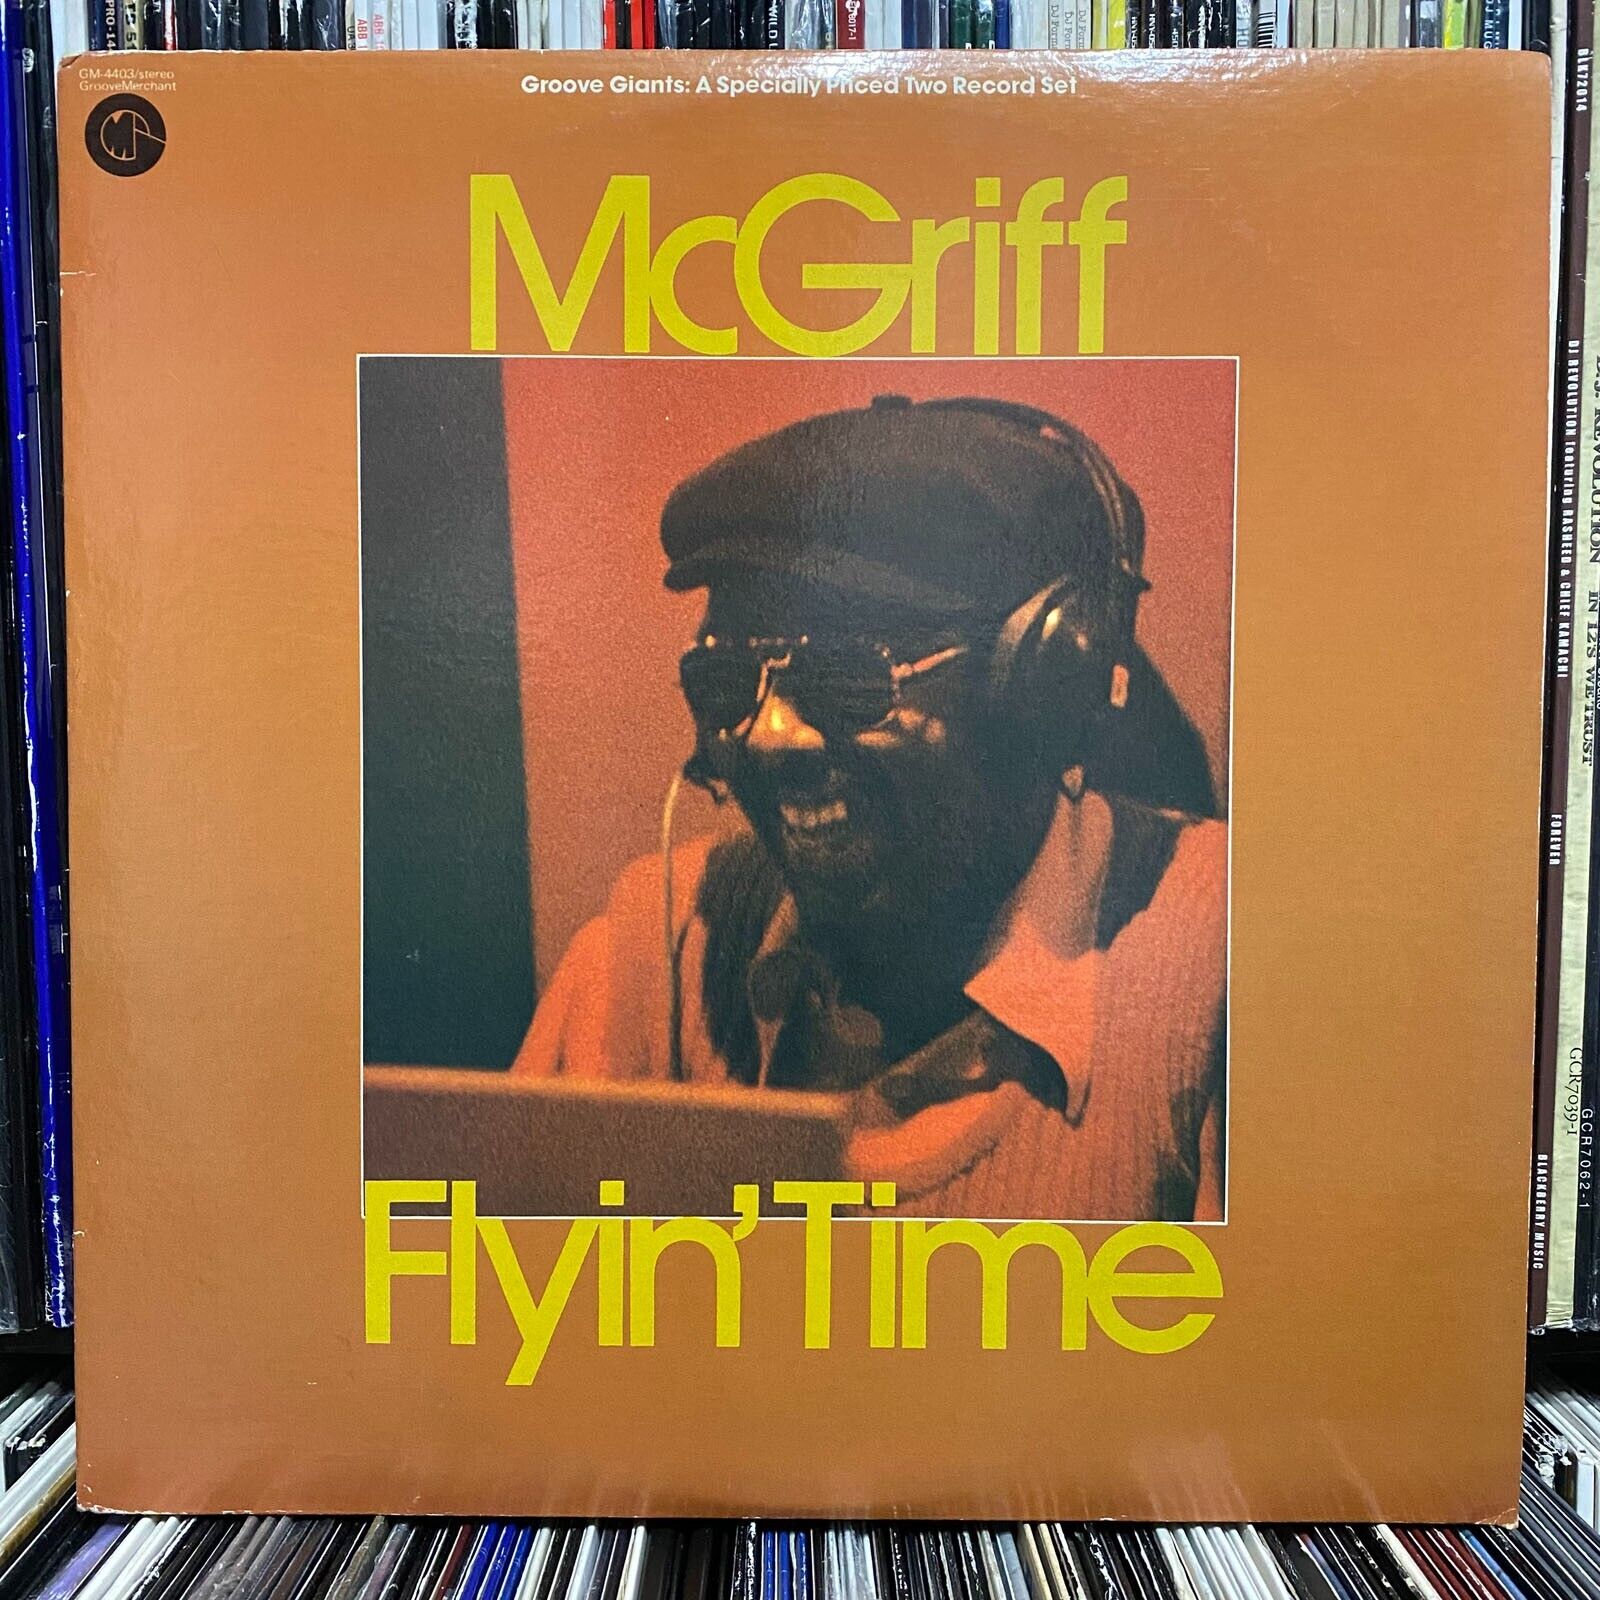 JIMMY MCGRIFF - FLYIN' TIME (VINYL 2LP)  1975!!  RARE!!  SONNY LESTER / GM-4403